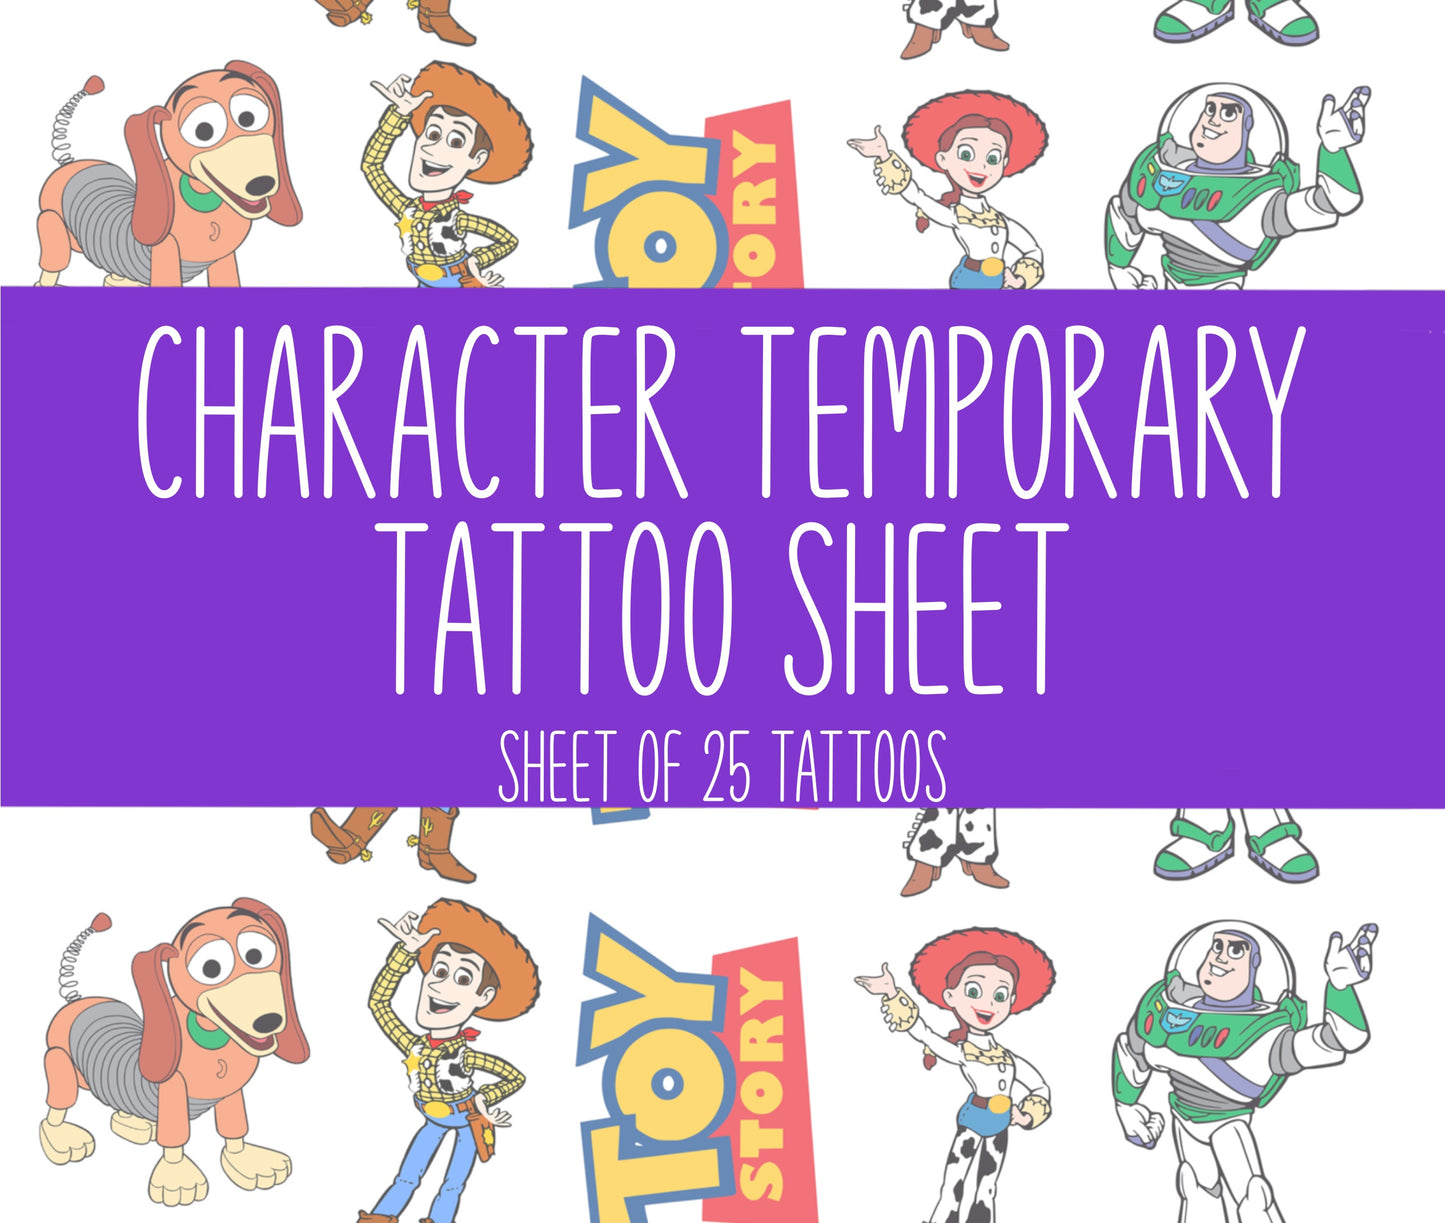 Toys Story Tattoo Sheet